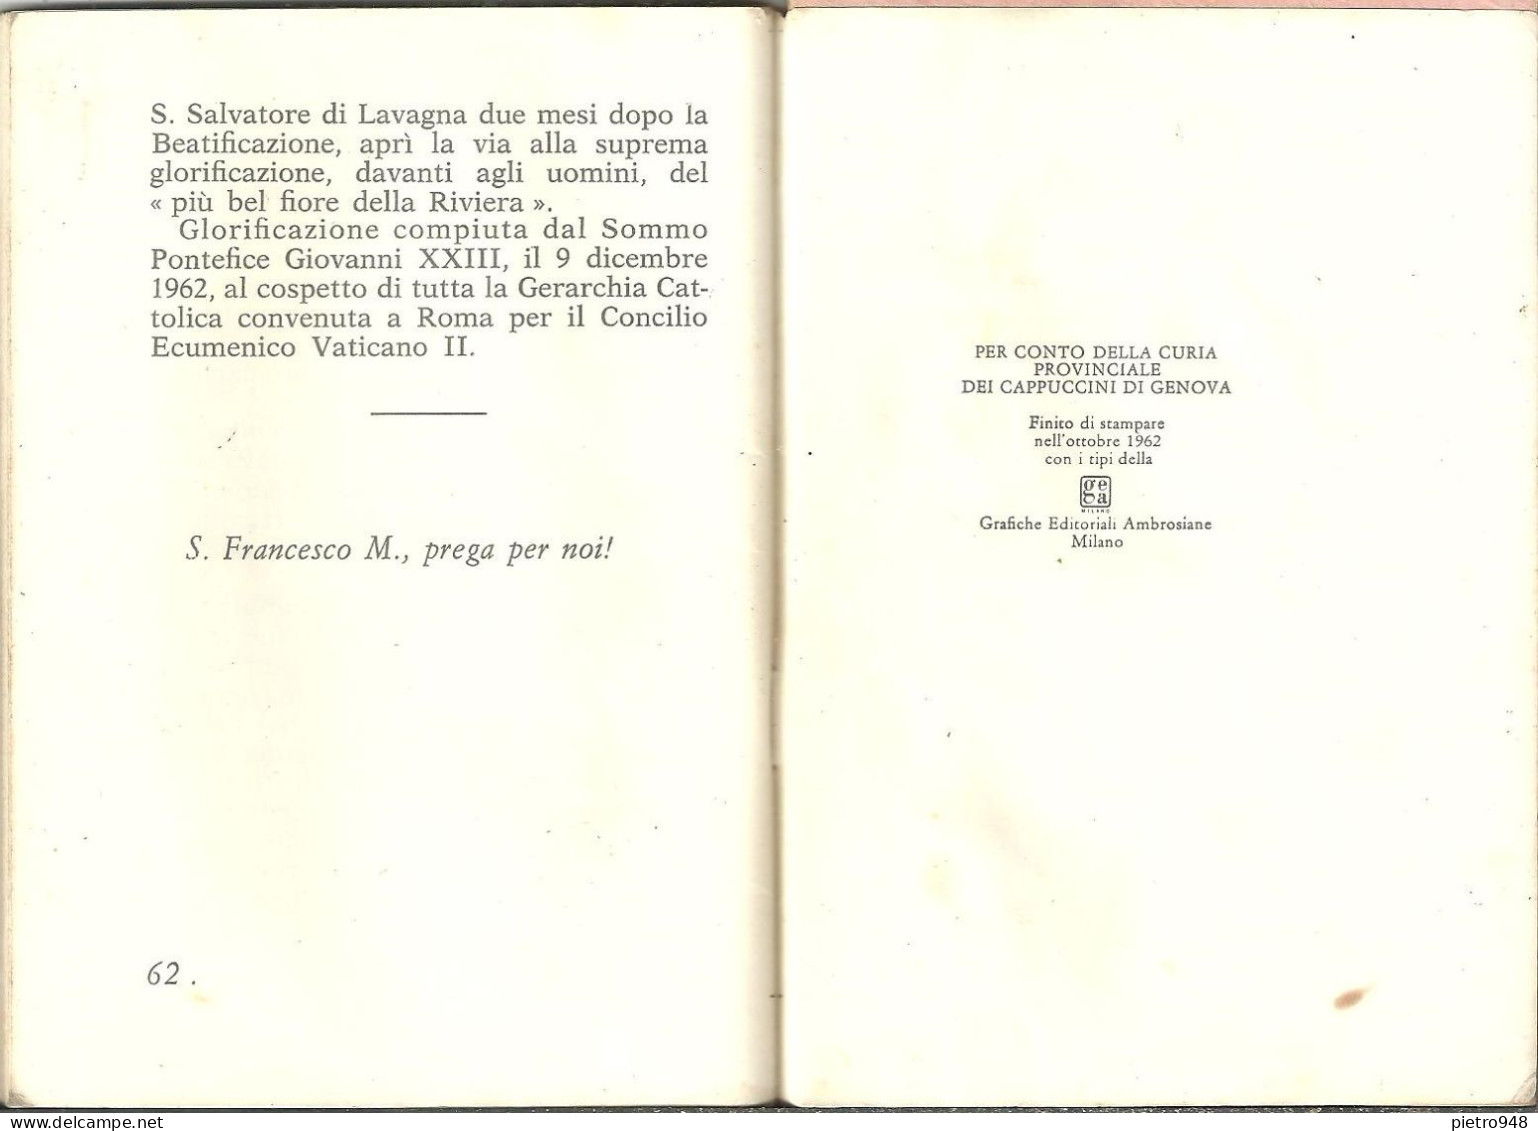 Libro (Libretto) Religioso "Il Più Bel Fiore della Riviera" S. Francesco da Camporosso Curia Prov Cappuccini Genova 1962